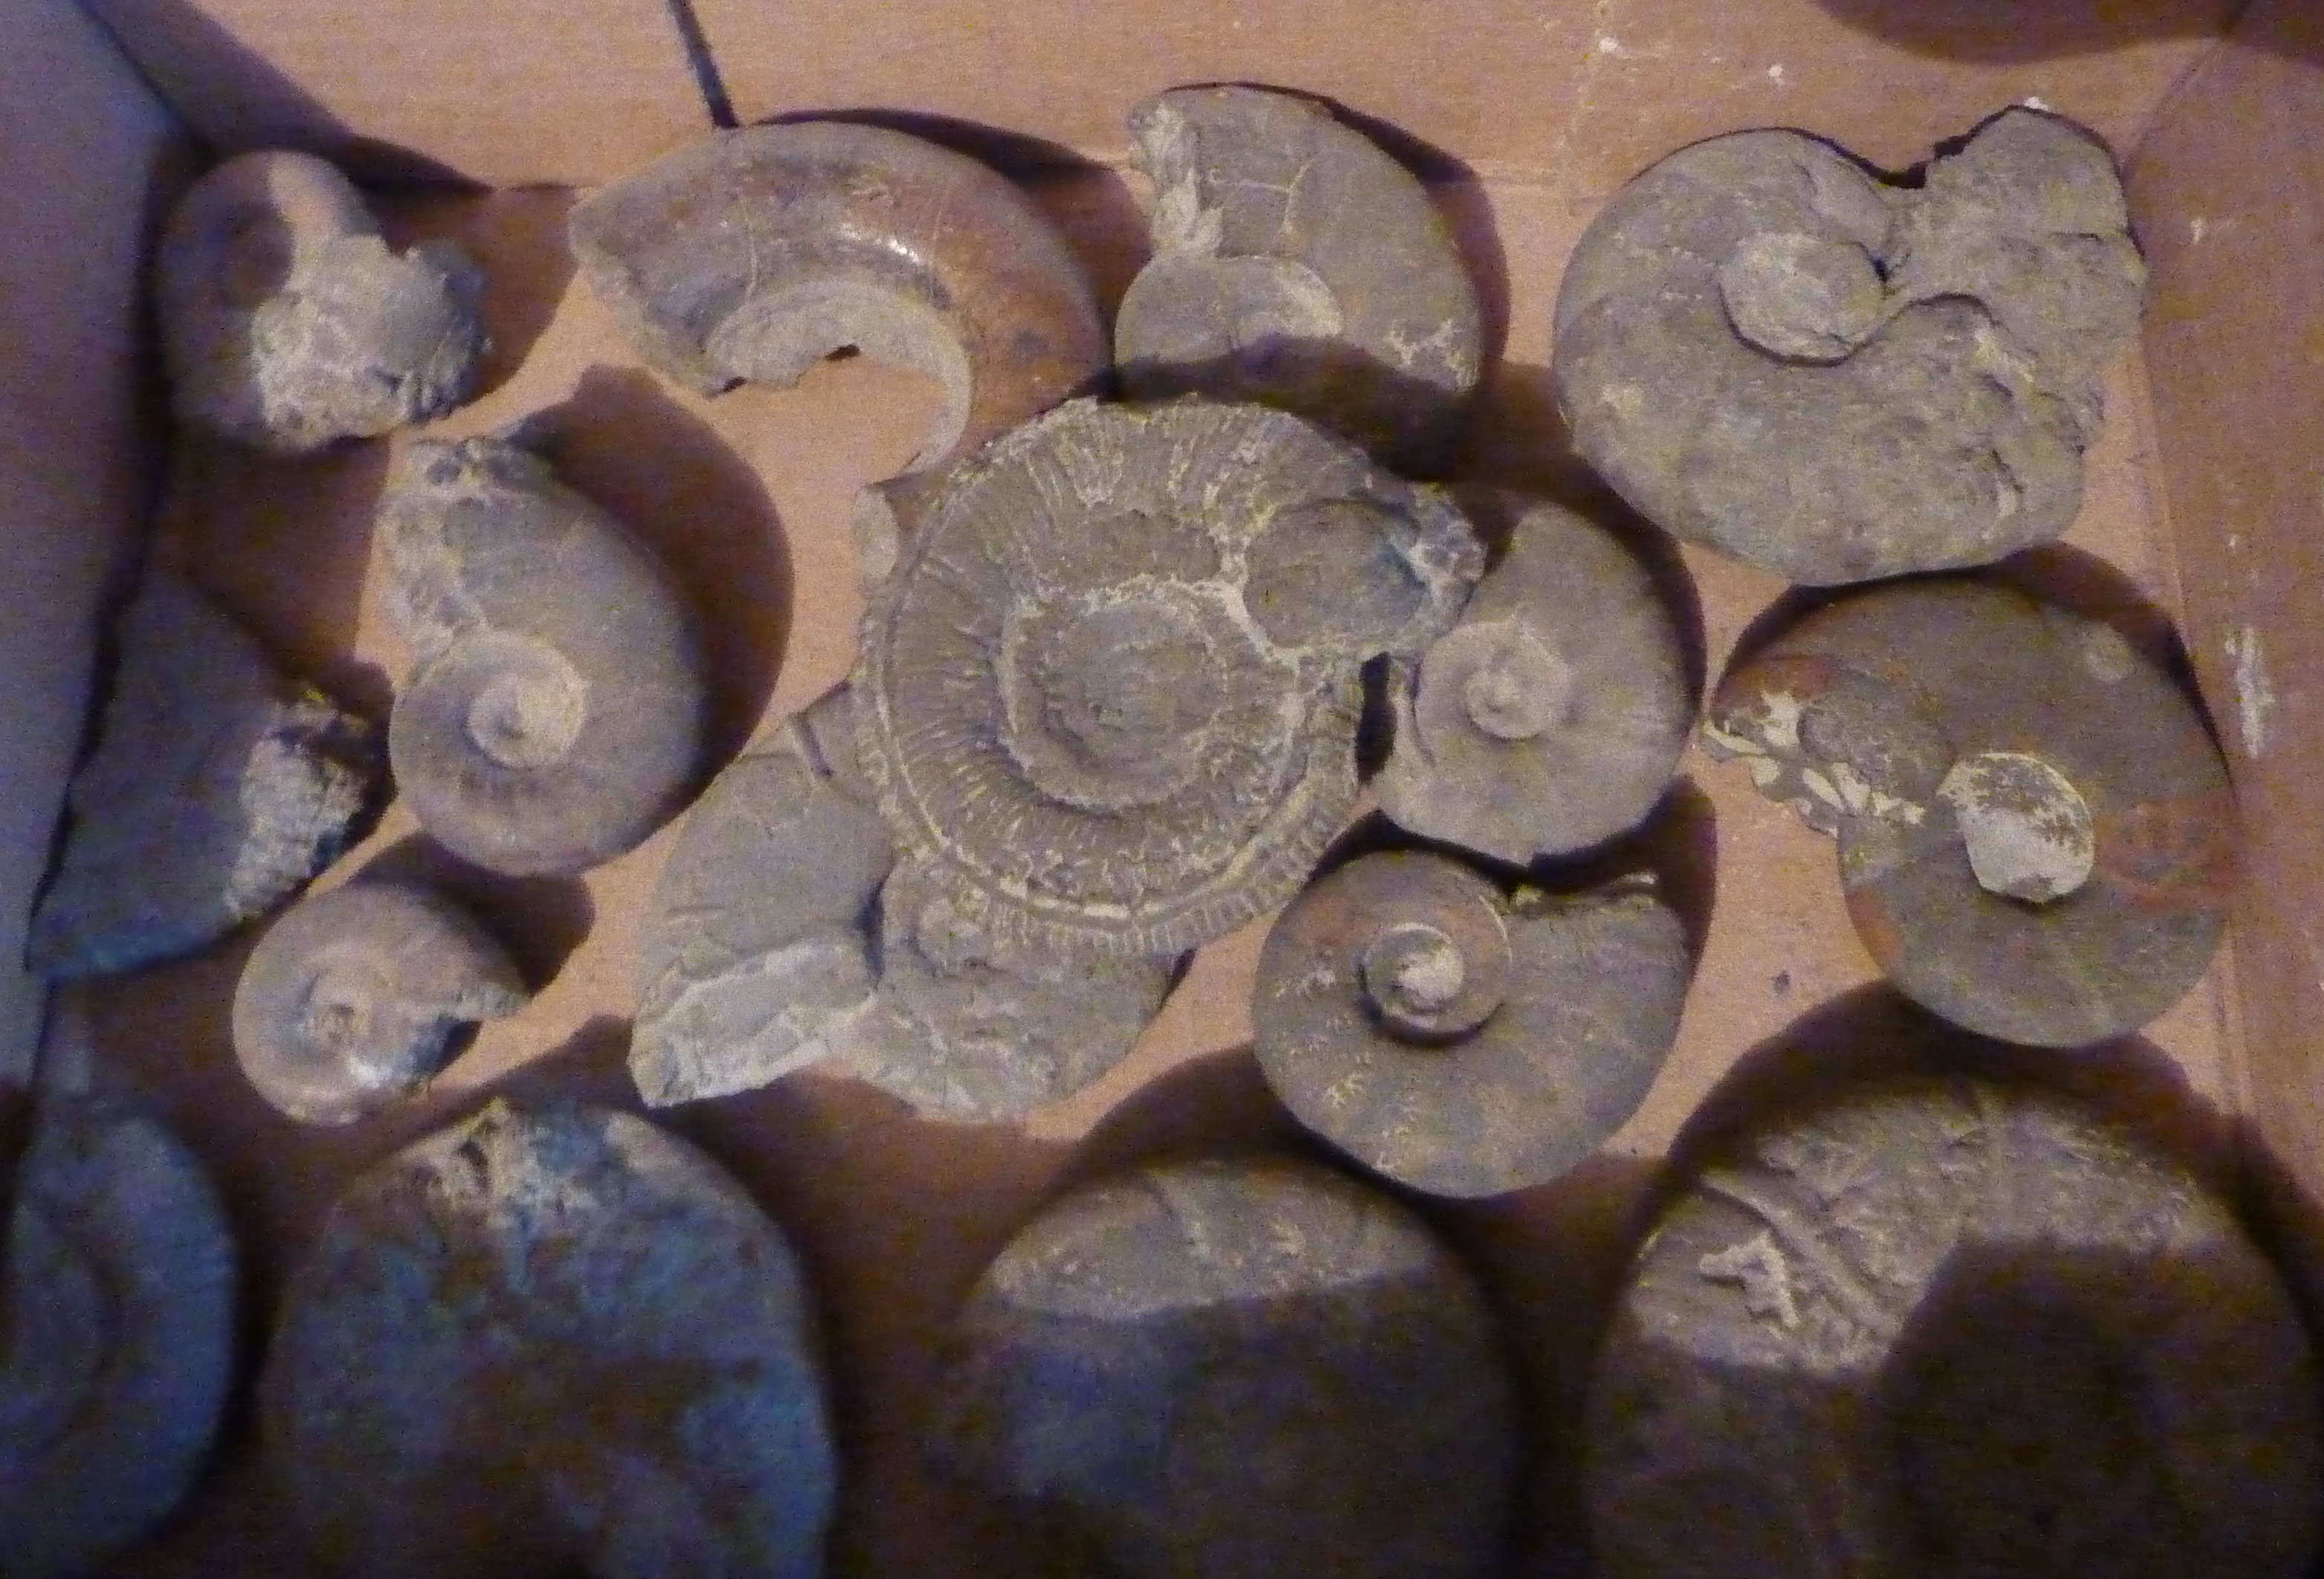 La commune de Barrème est riche en fossiles caractéristiques que sont les ammonites